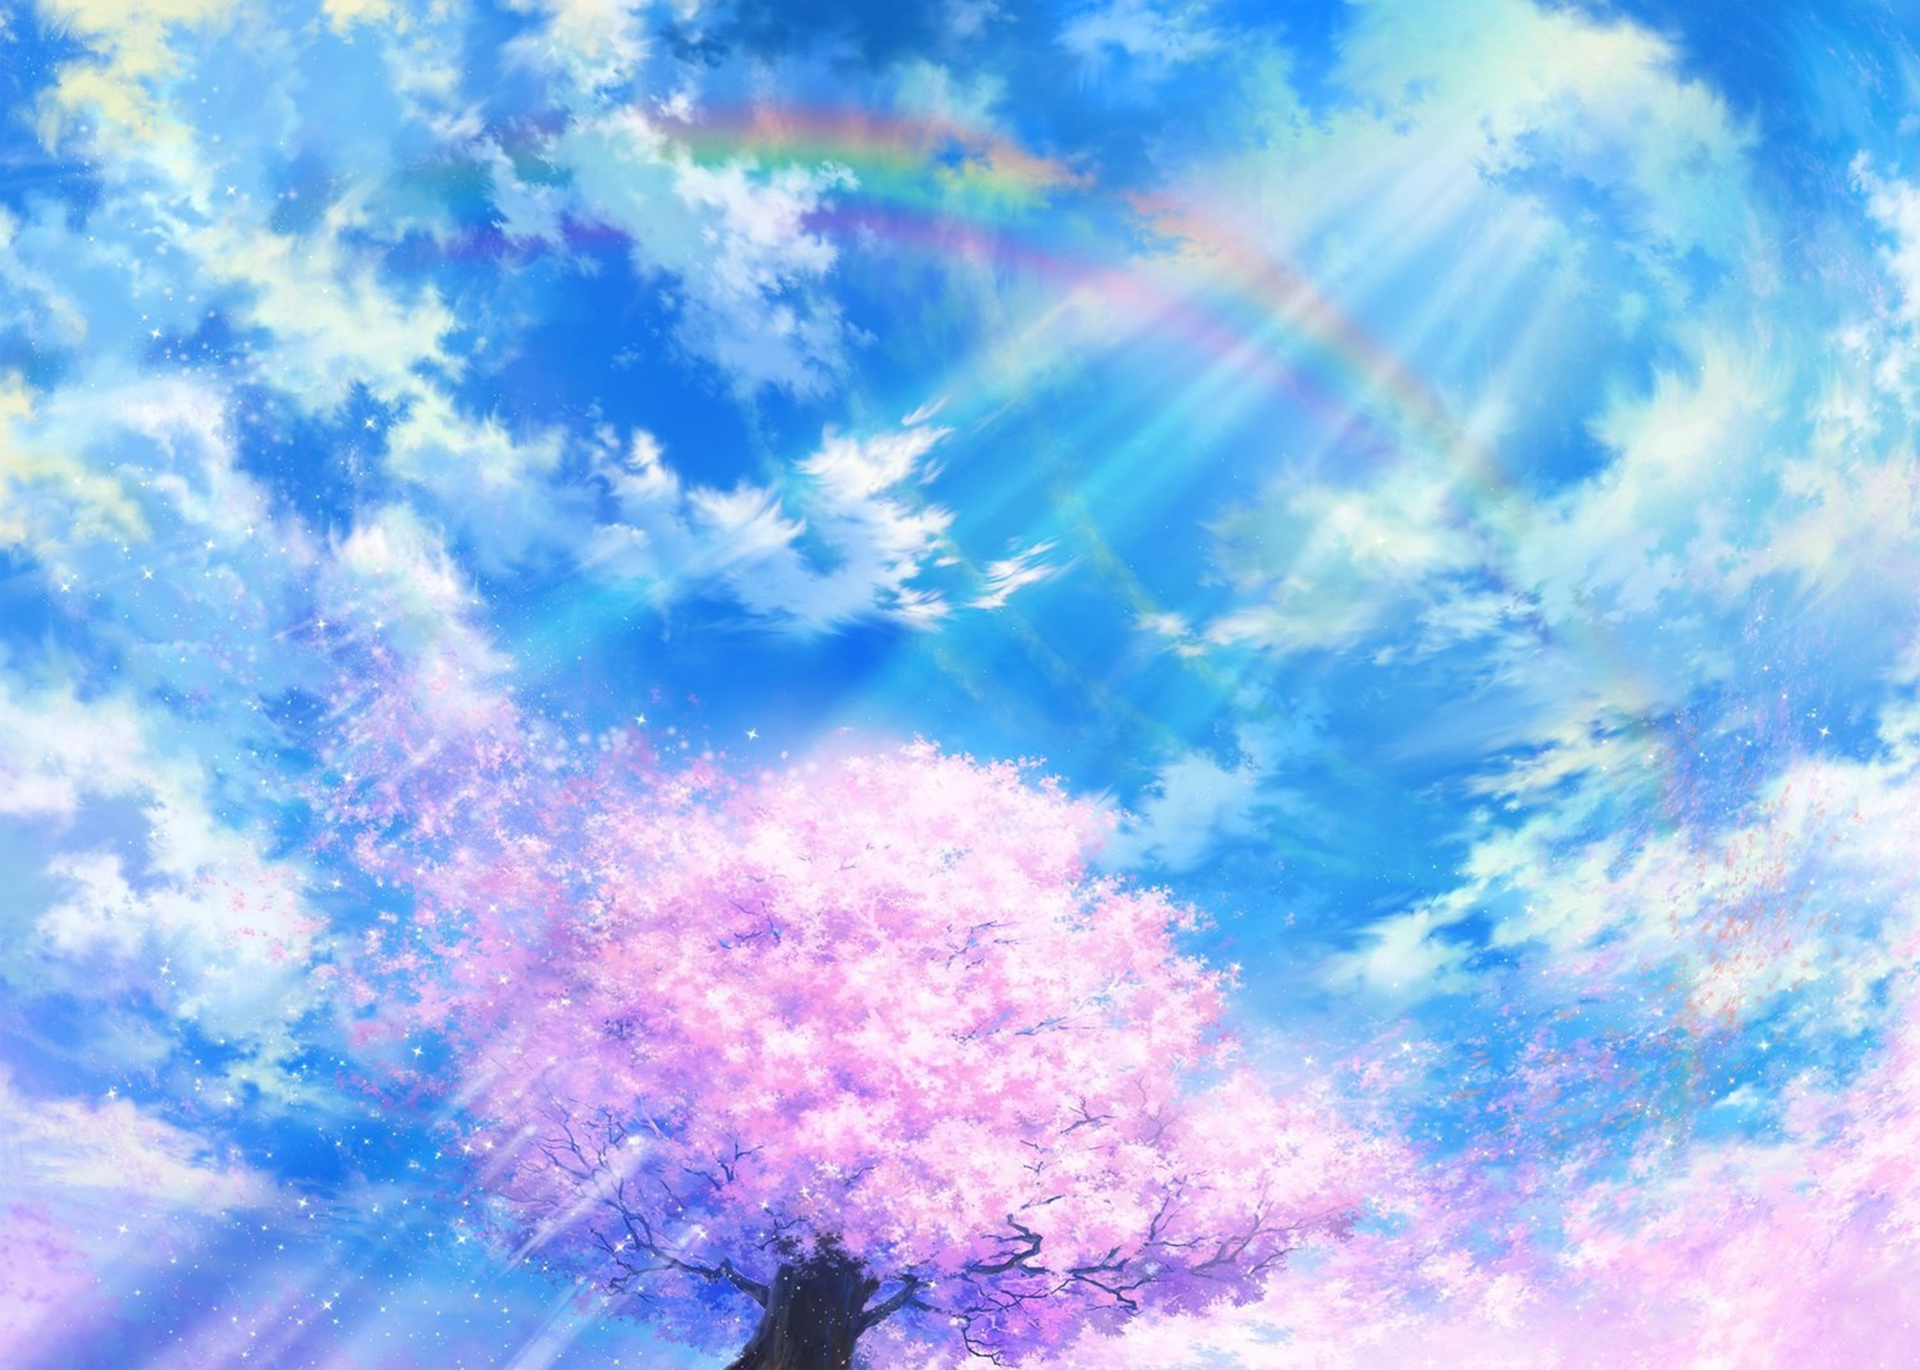 Nếu bạn thích những bức ảnh anime lãng mạn và không gian bầu trời xanh đầy ấn tượng, hãy xem bức ảnh này ngay! Những đám mây trắng bay trong bầu trời xanh và ánh nắng lung linh tạo nên một hình ảnh đẹp tuyệt vời, độc đáo và gây cảm hứng. Hãy để tâm hồn bạn thả hồn vào không gian bầu trời xanh trong ảnh anime này!